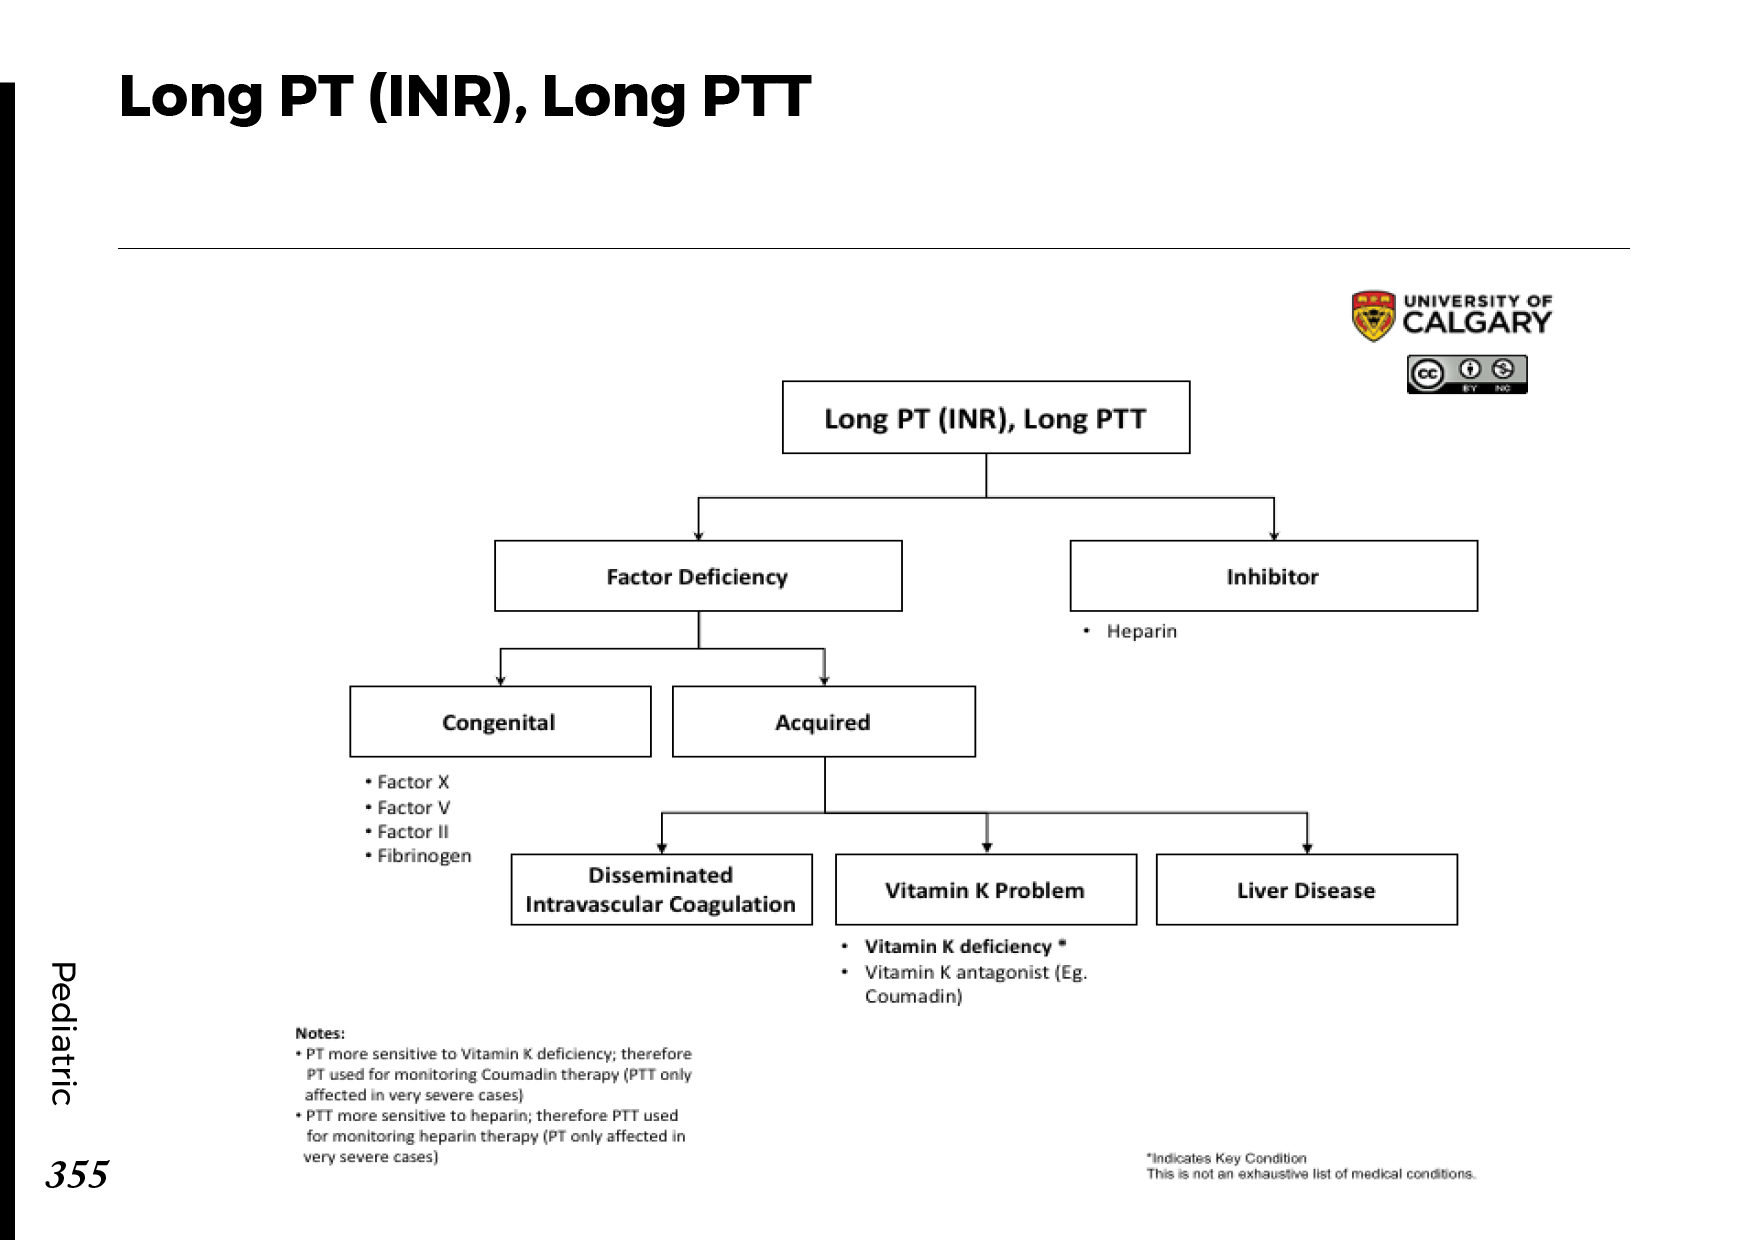 LONG PT (INR), LONG PTT Scheme